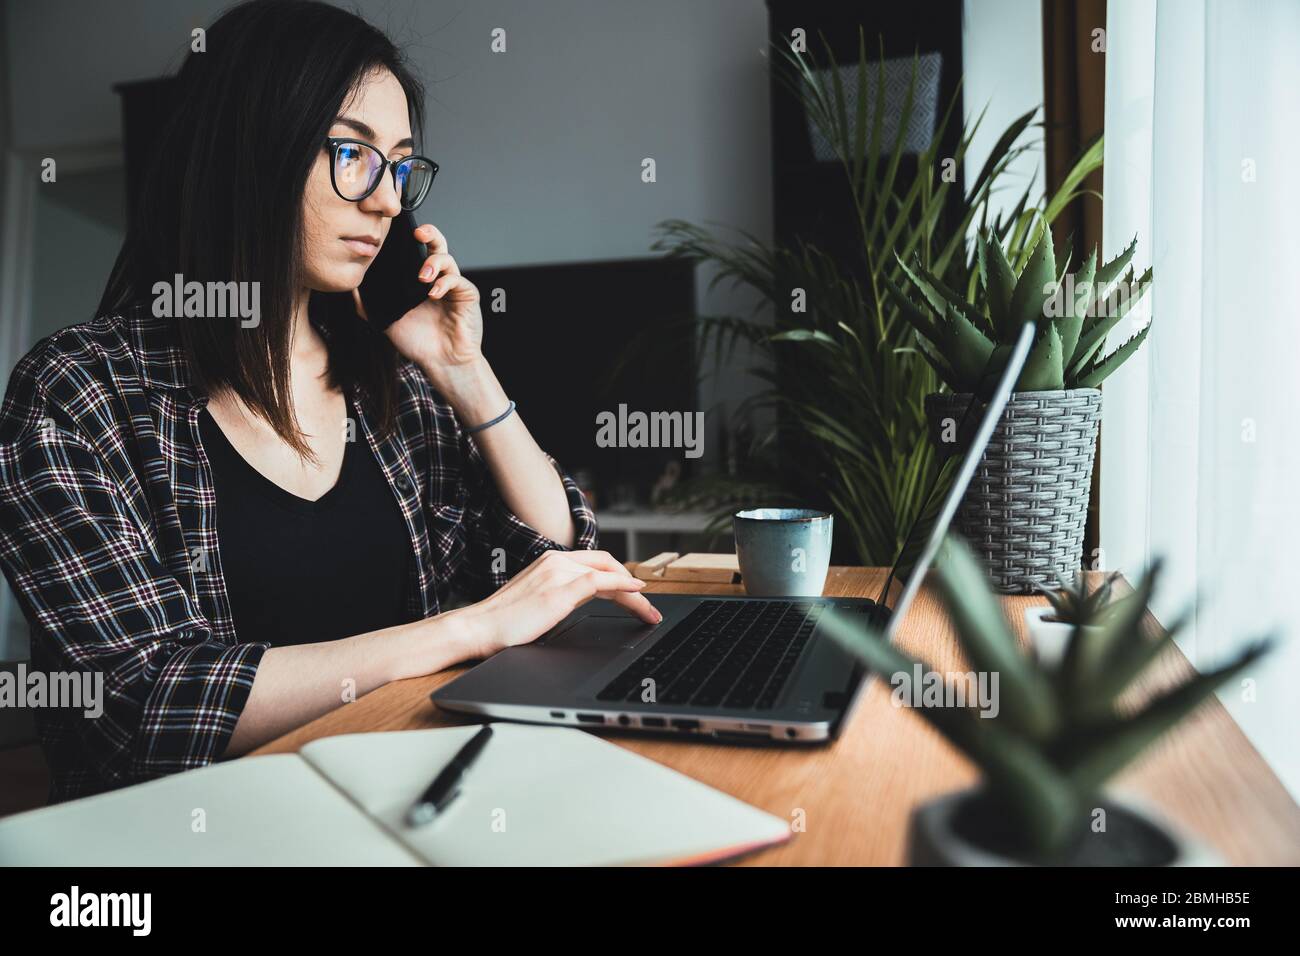 Konzentrierte junge Frau am Telefon während der Arbeit am Laptop. Geschäftsfrau im Gespräch am Telefon im Büro. Work from Home Konzept Stockfoto